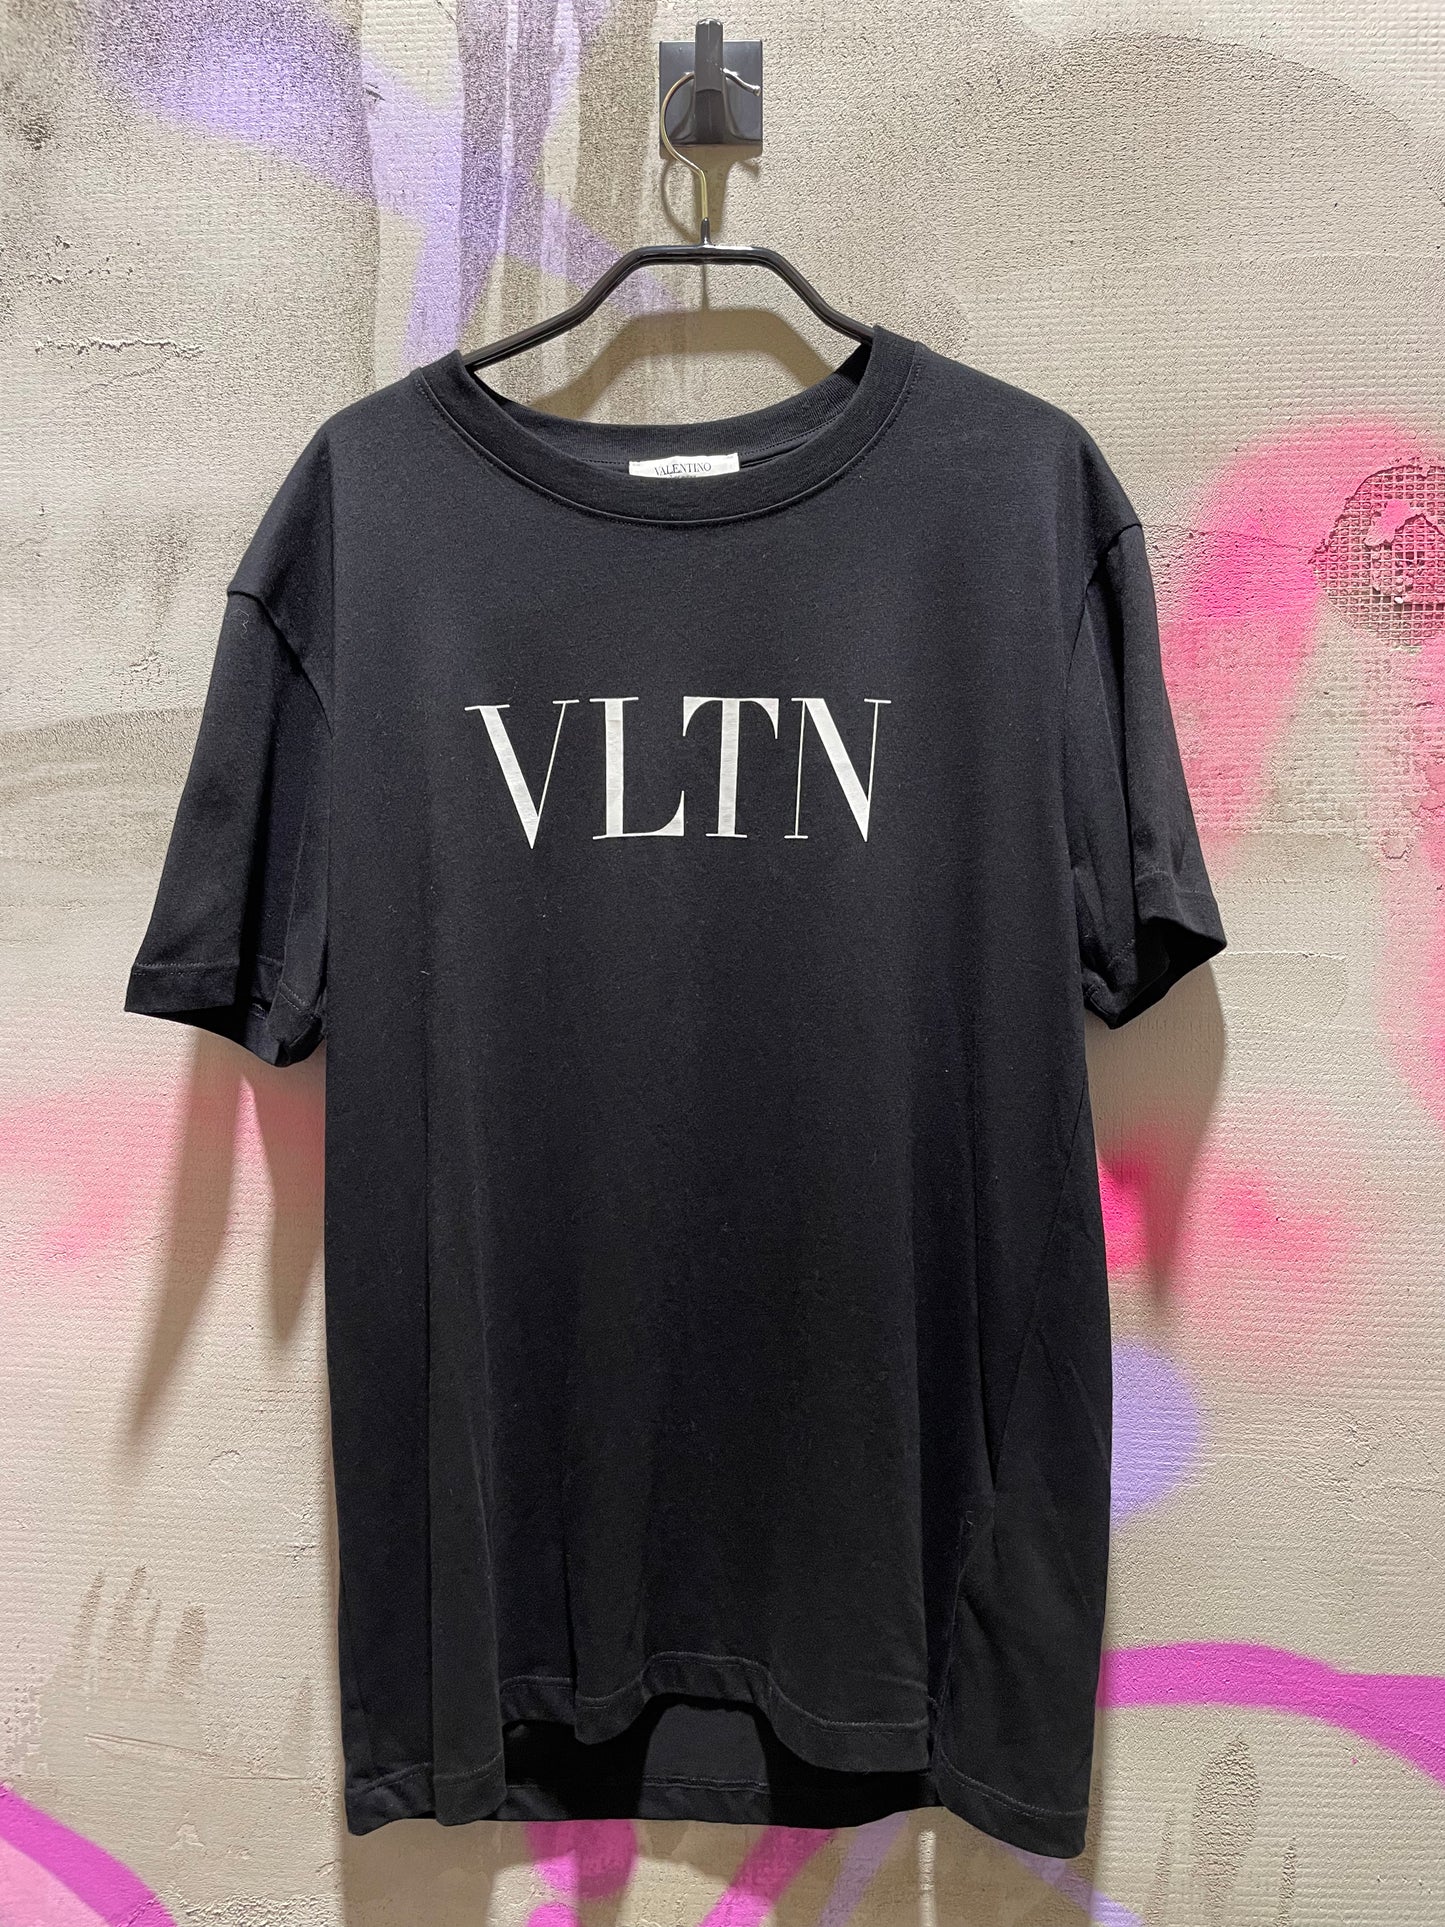 VALENTINO VLTN T-SHIRT